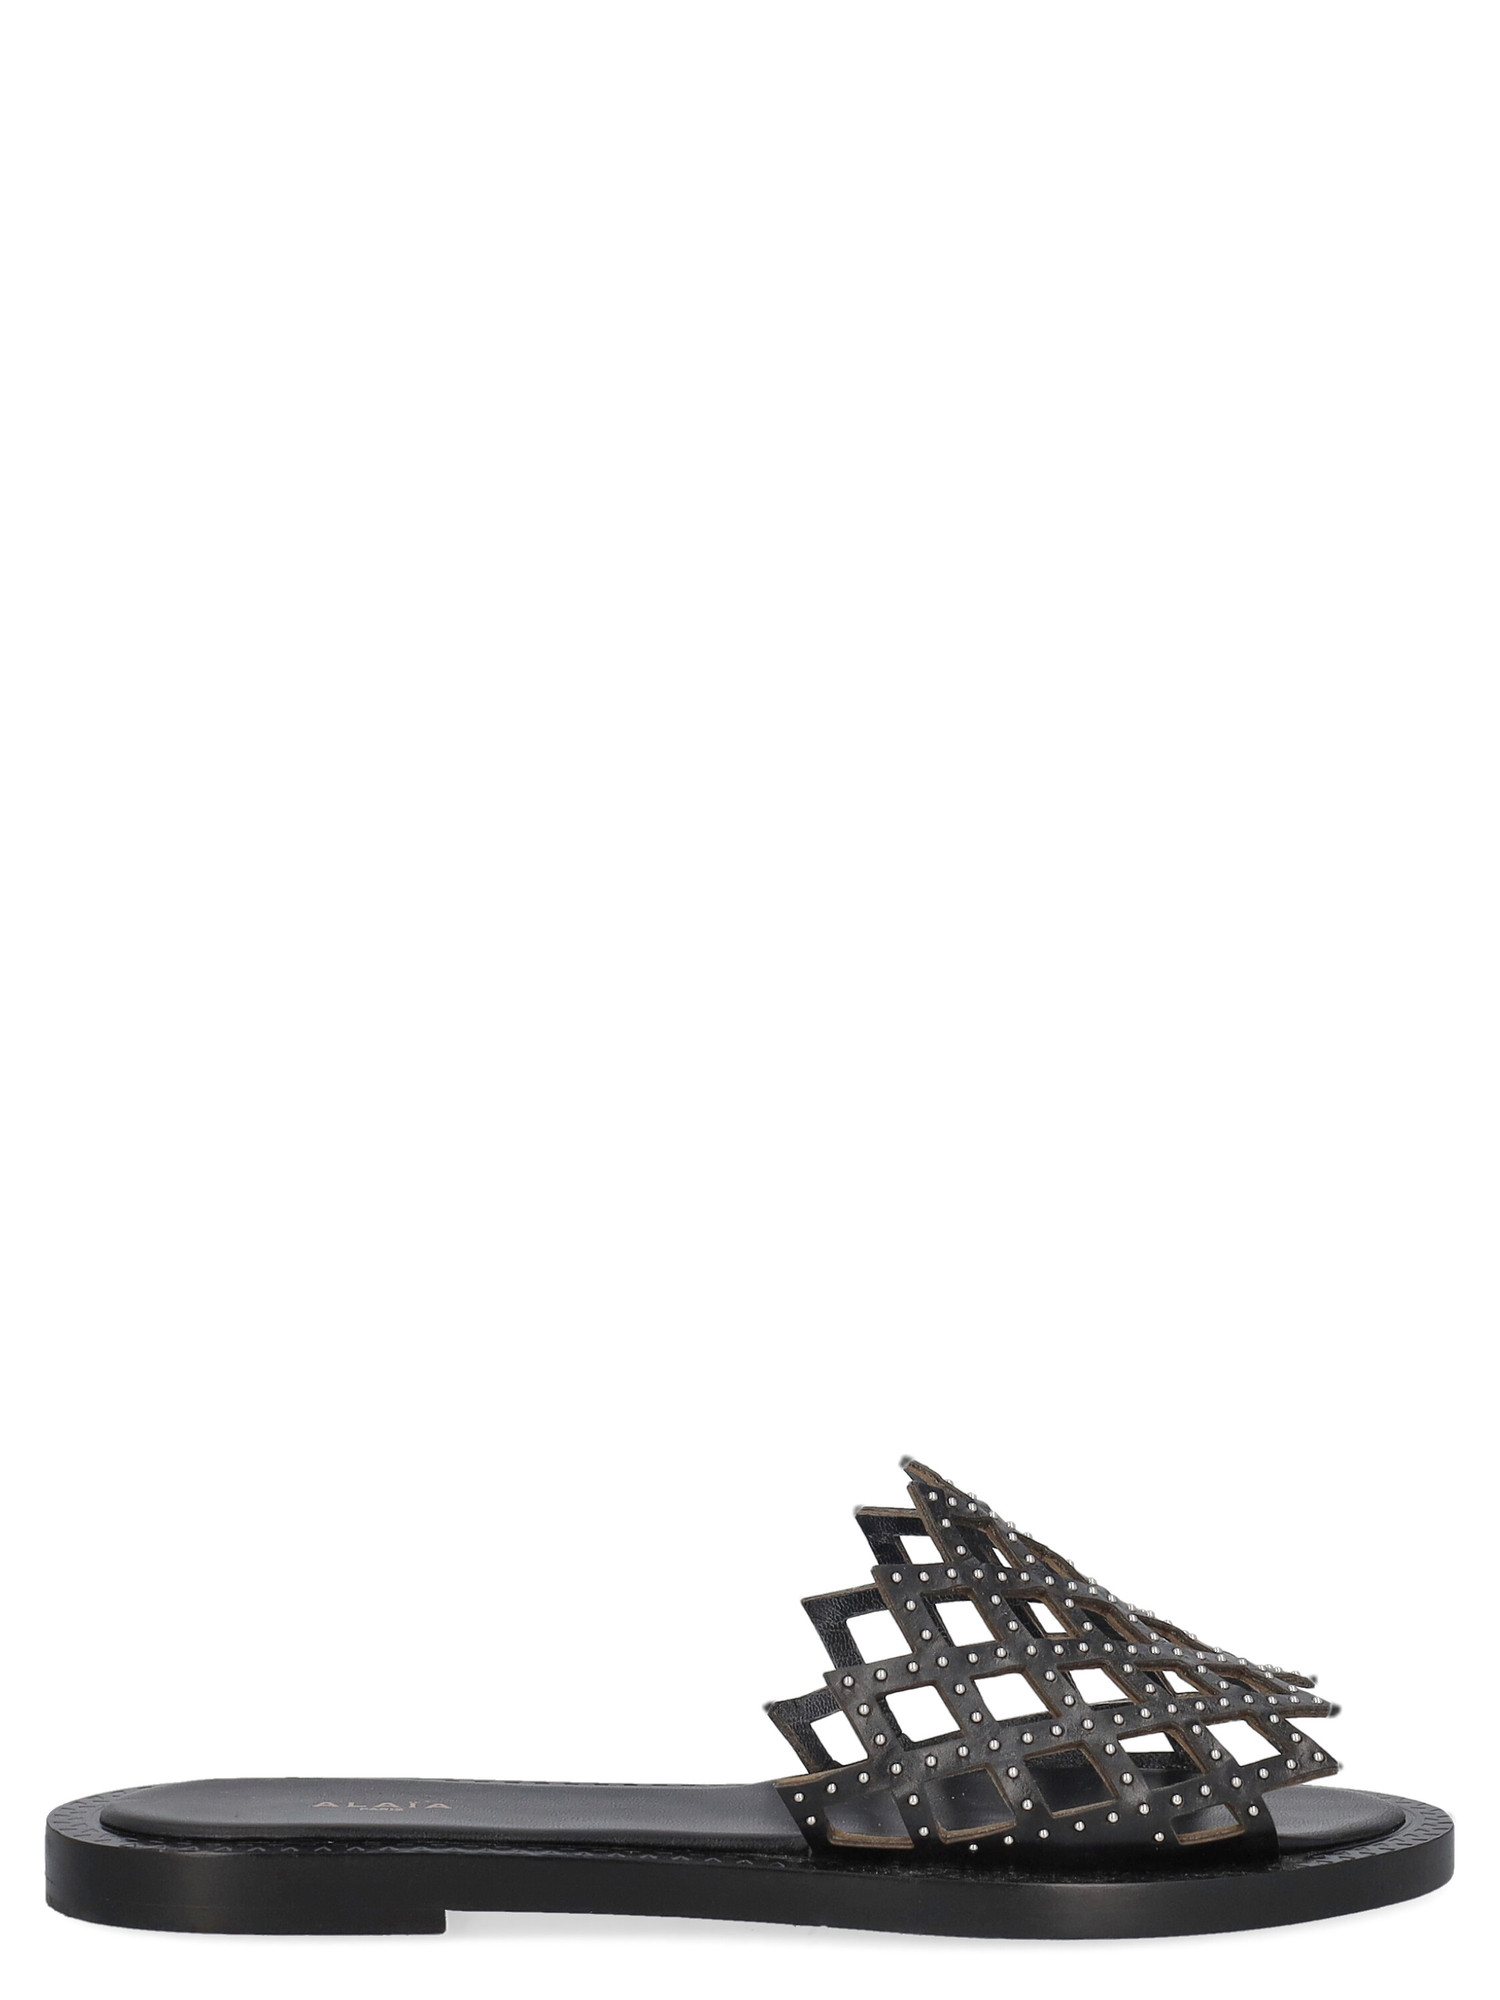 Slippers Pour Femme - Alaia - En Leather Black - Taille: IT 38.5 - EU 38.5